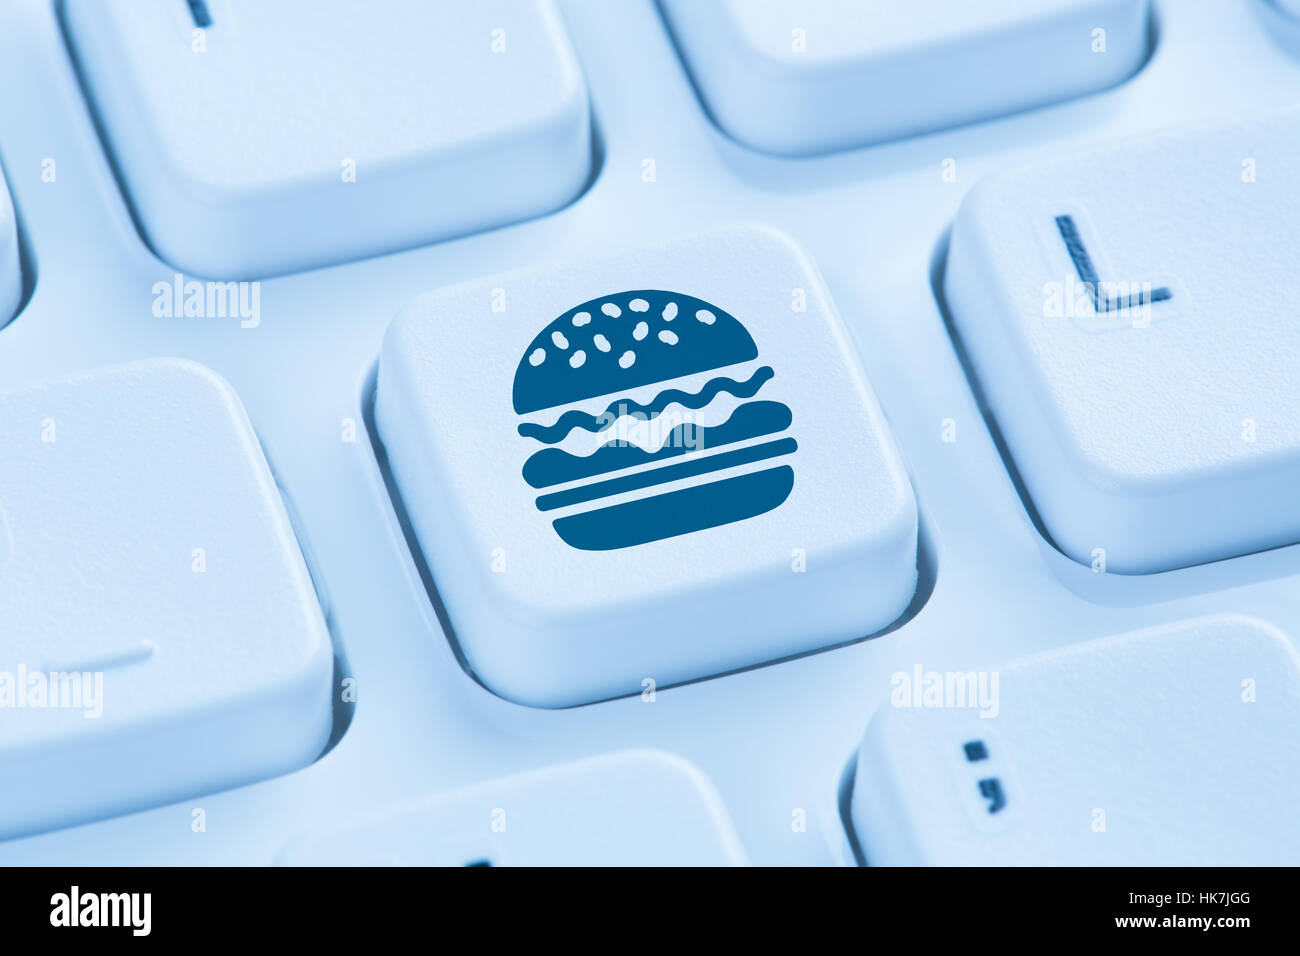 Ordinateur hamburger cheeseburger fast food livraison de commande en ligne de commande clavier bleu symbole Banque D'Images